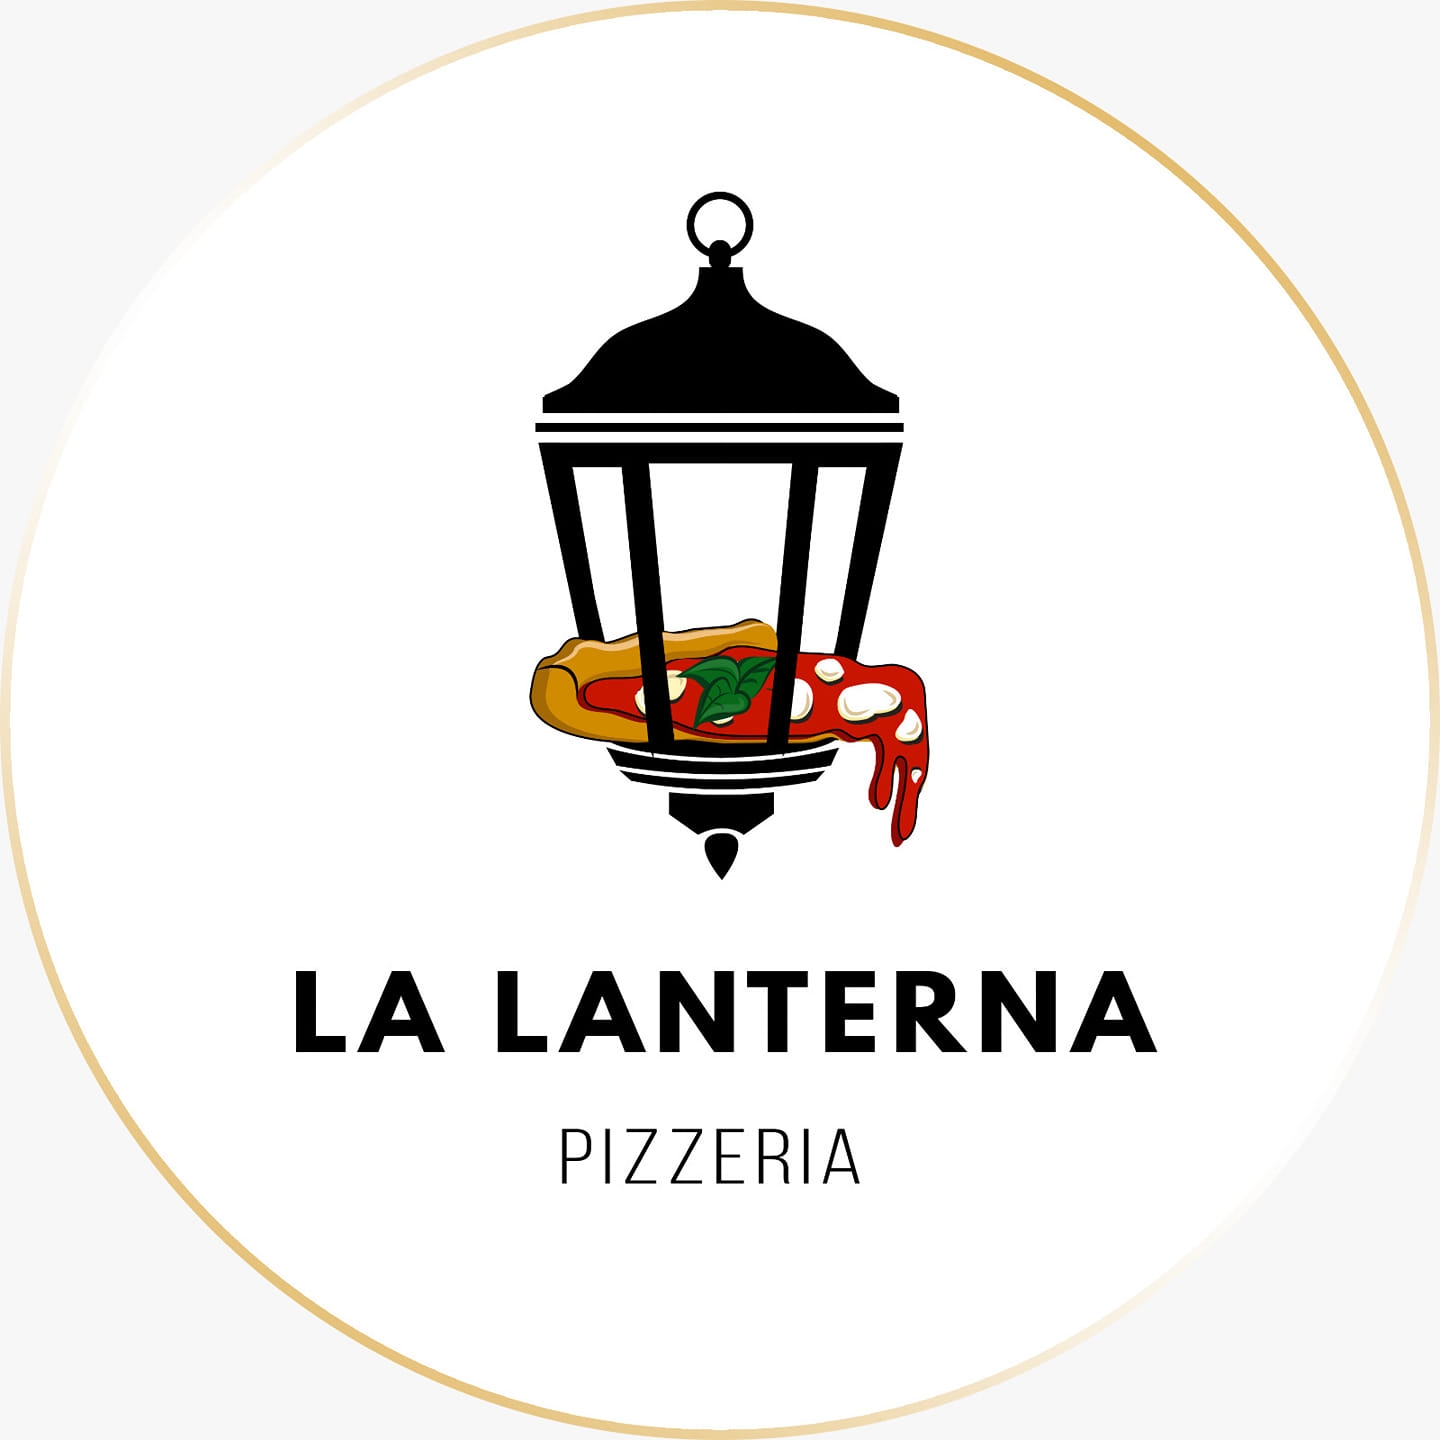 La Lanterna Pizzeria